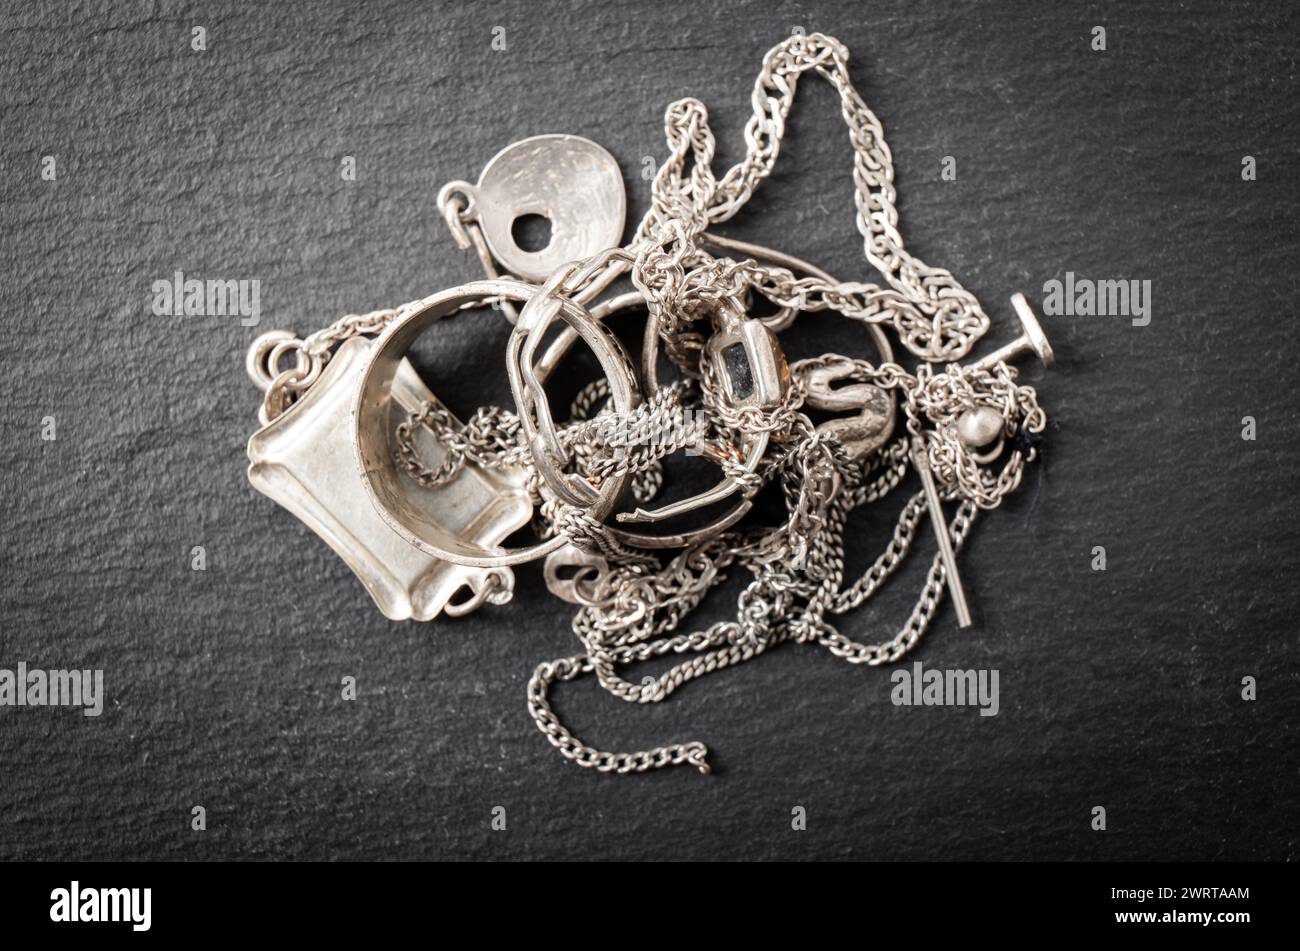 Ein Haufen alter Silberschrott, Ringe, Anhänger, Ketten, Ohrringe. Recycling-Konzept für Silberobjekte. Stockfoto